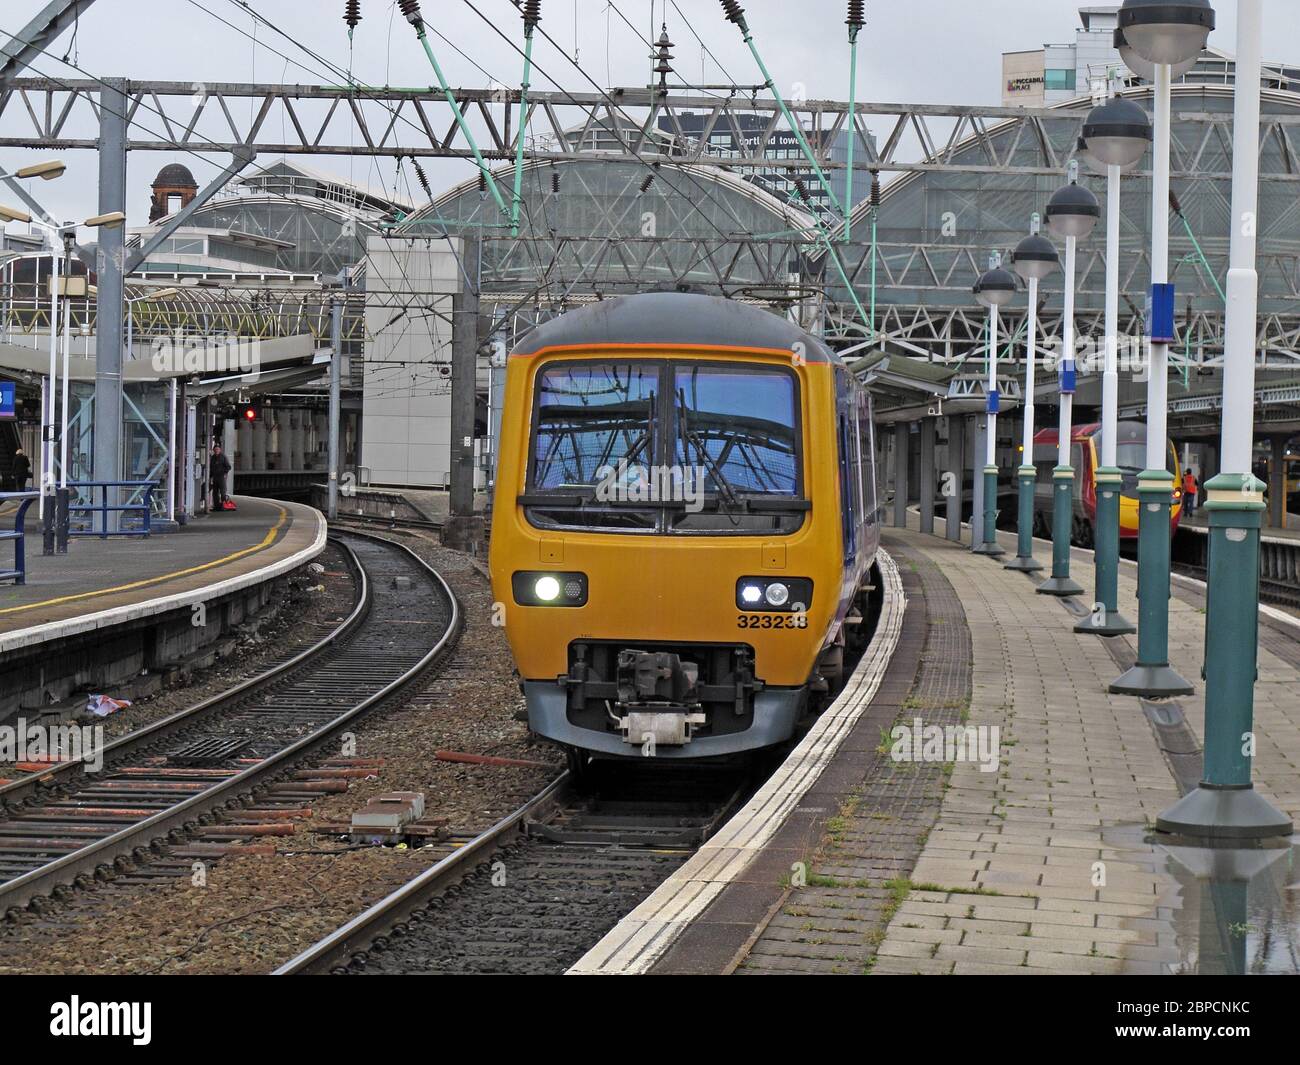 EMU 323238 leaving Manchester Piccadilly Railway station,Lancashire, England, UK, M60 7RA Stock Photo